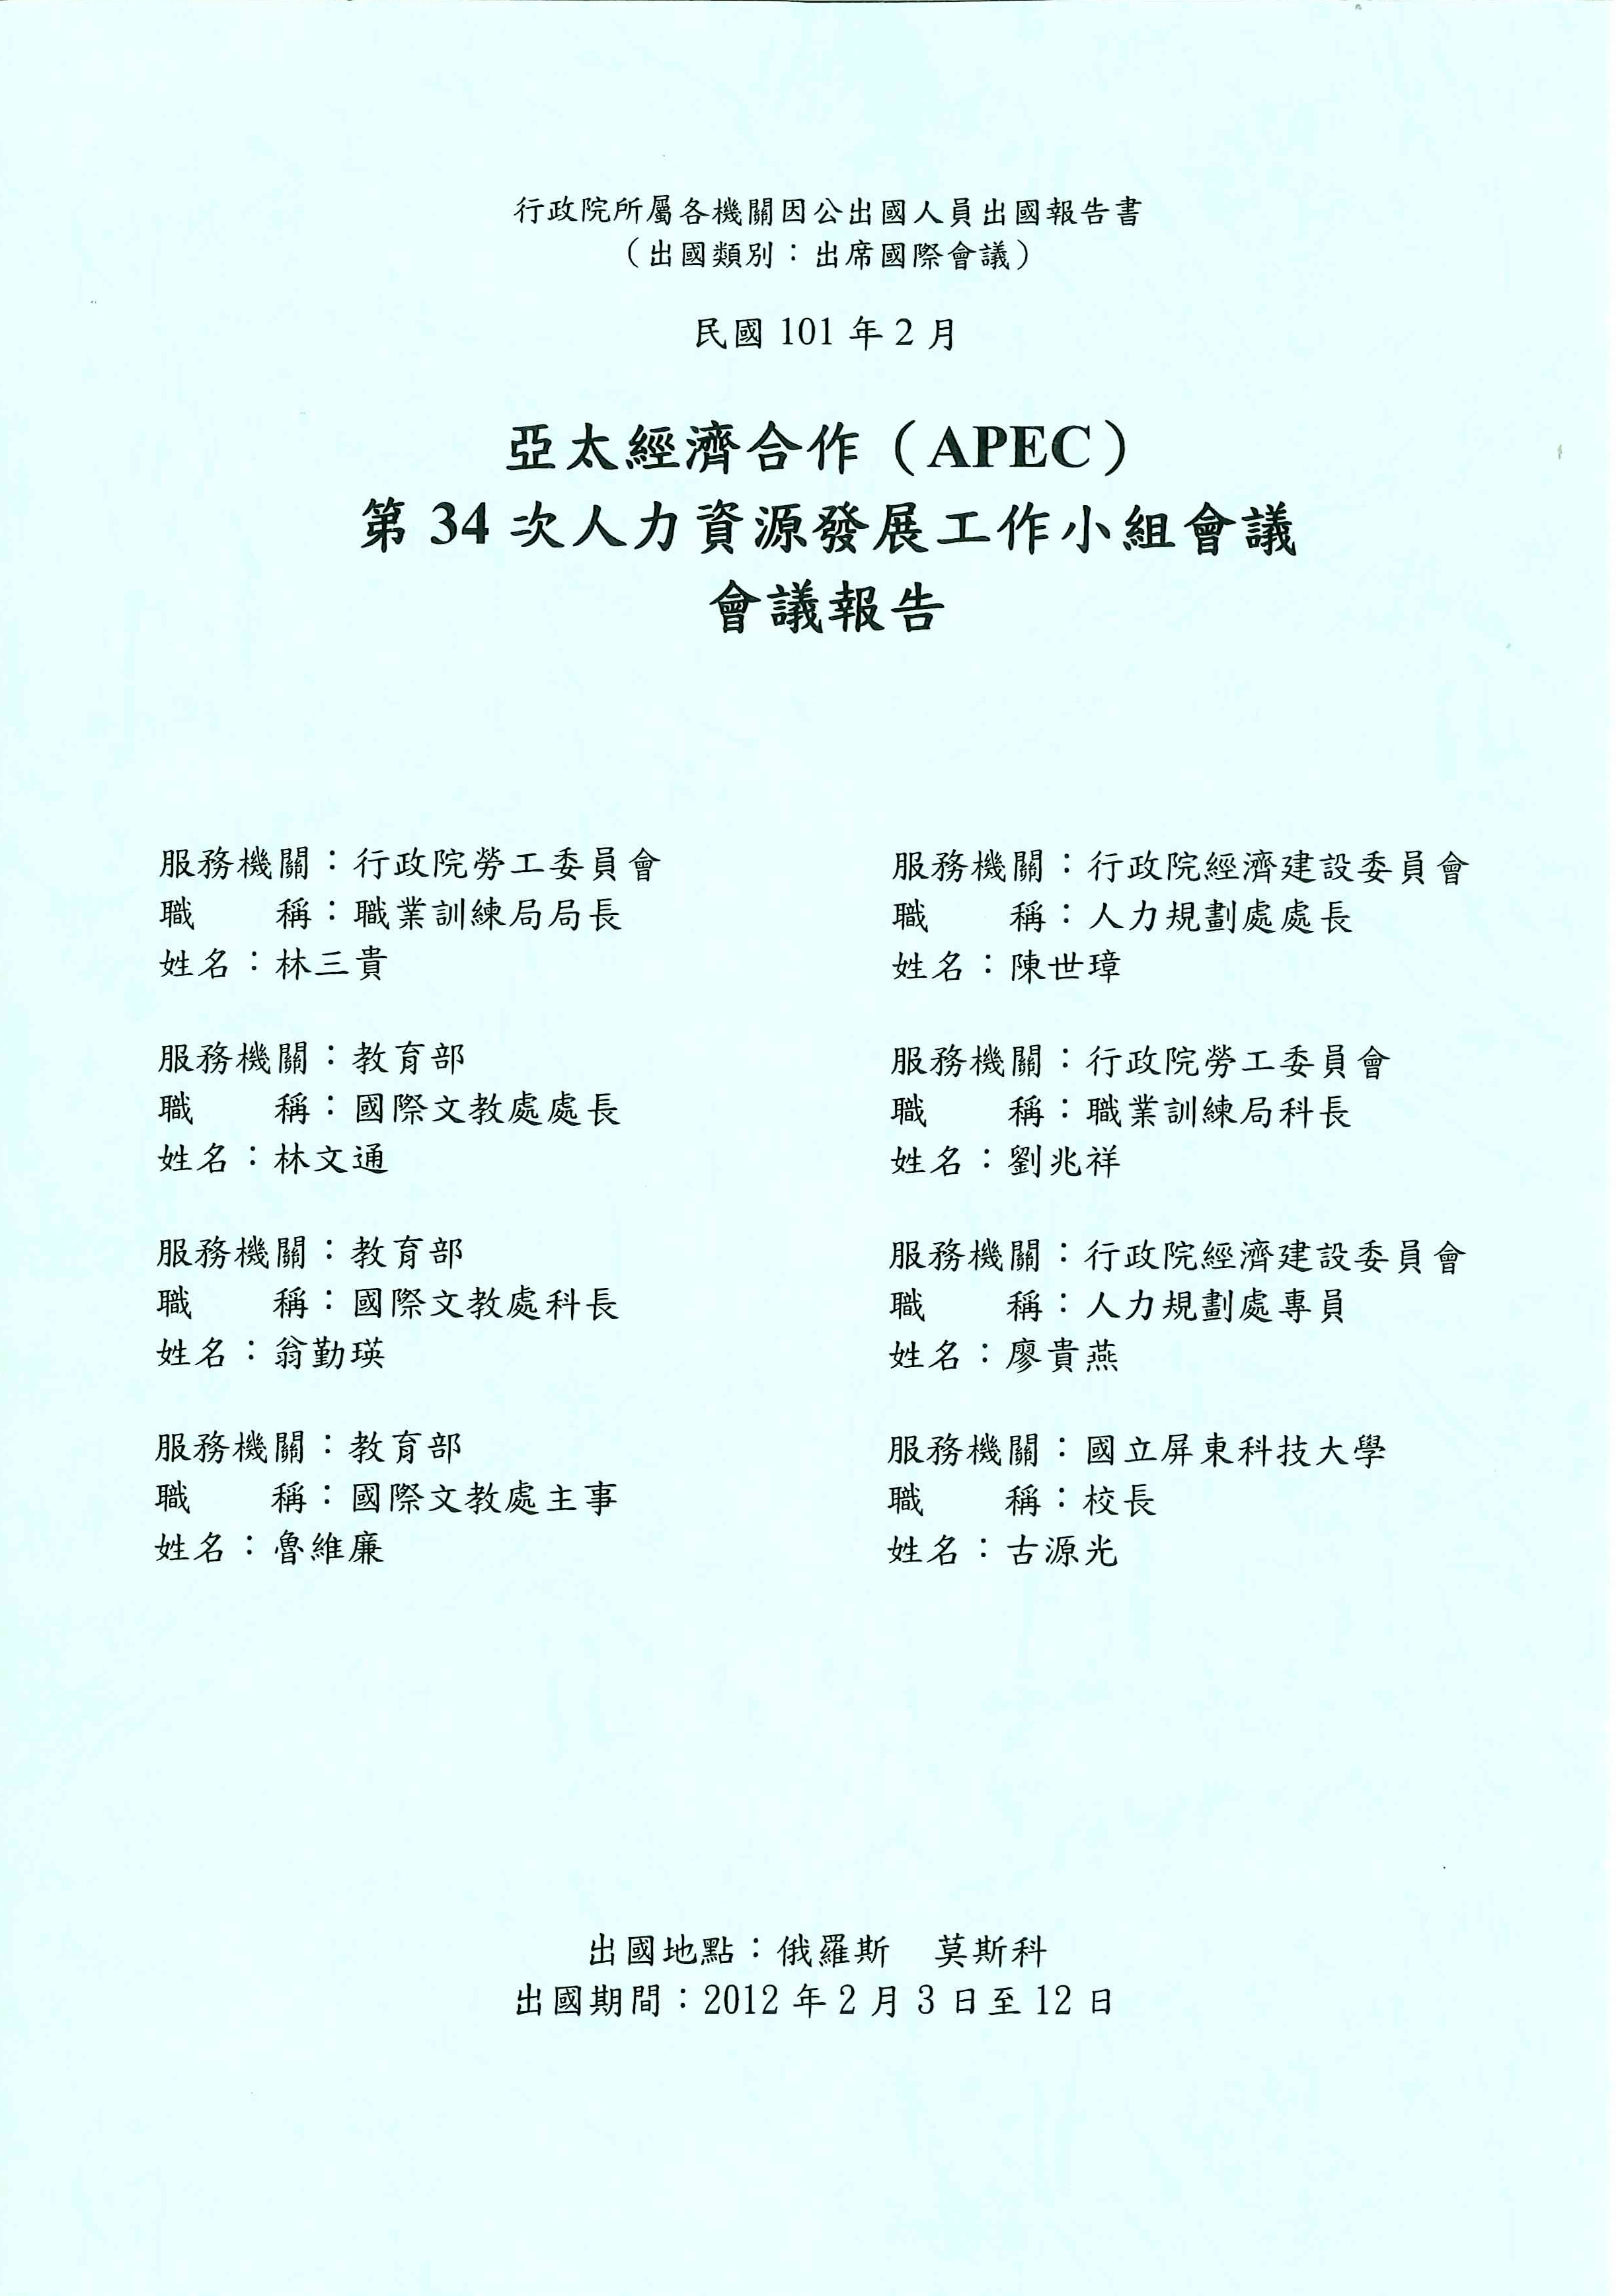 亞太經濟合作(APEC)第34次人力資源發展工作小組會議會議報告